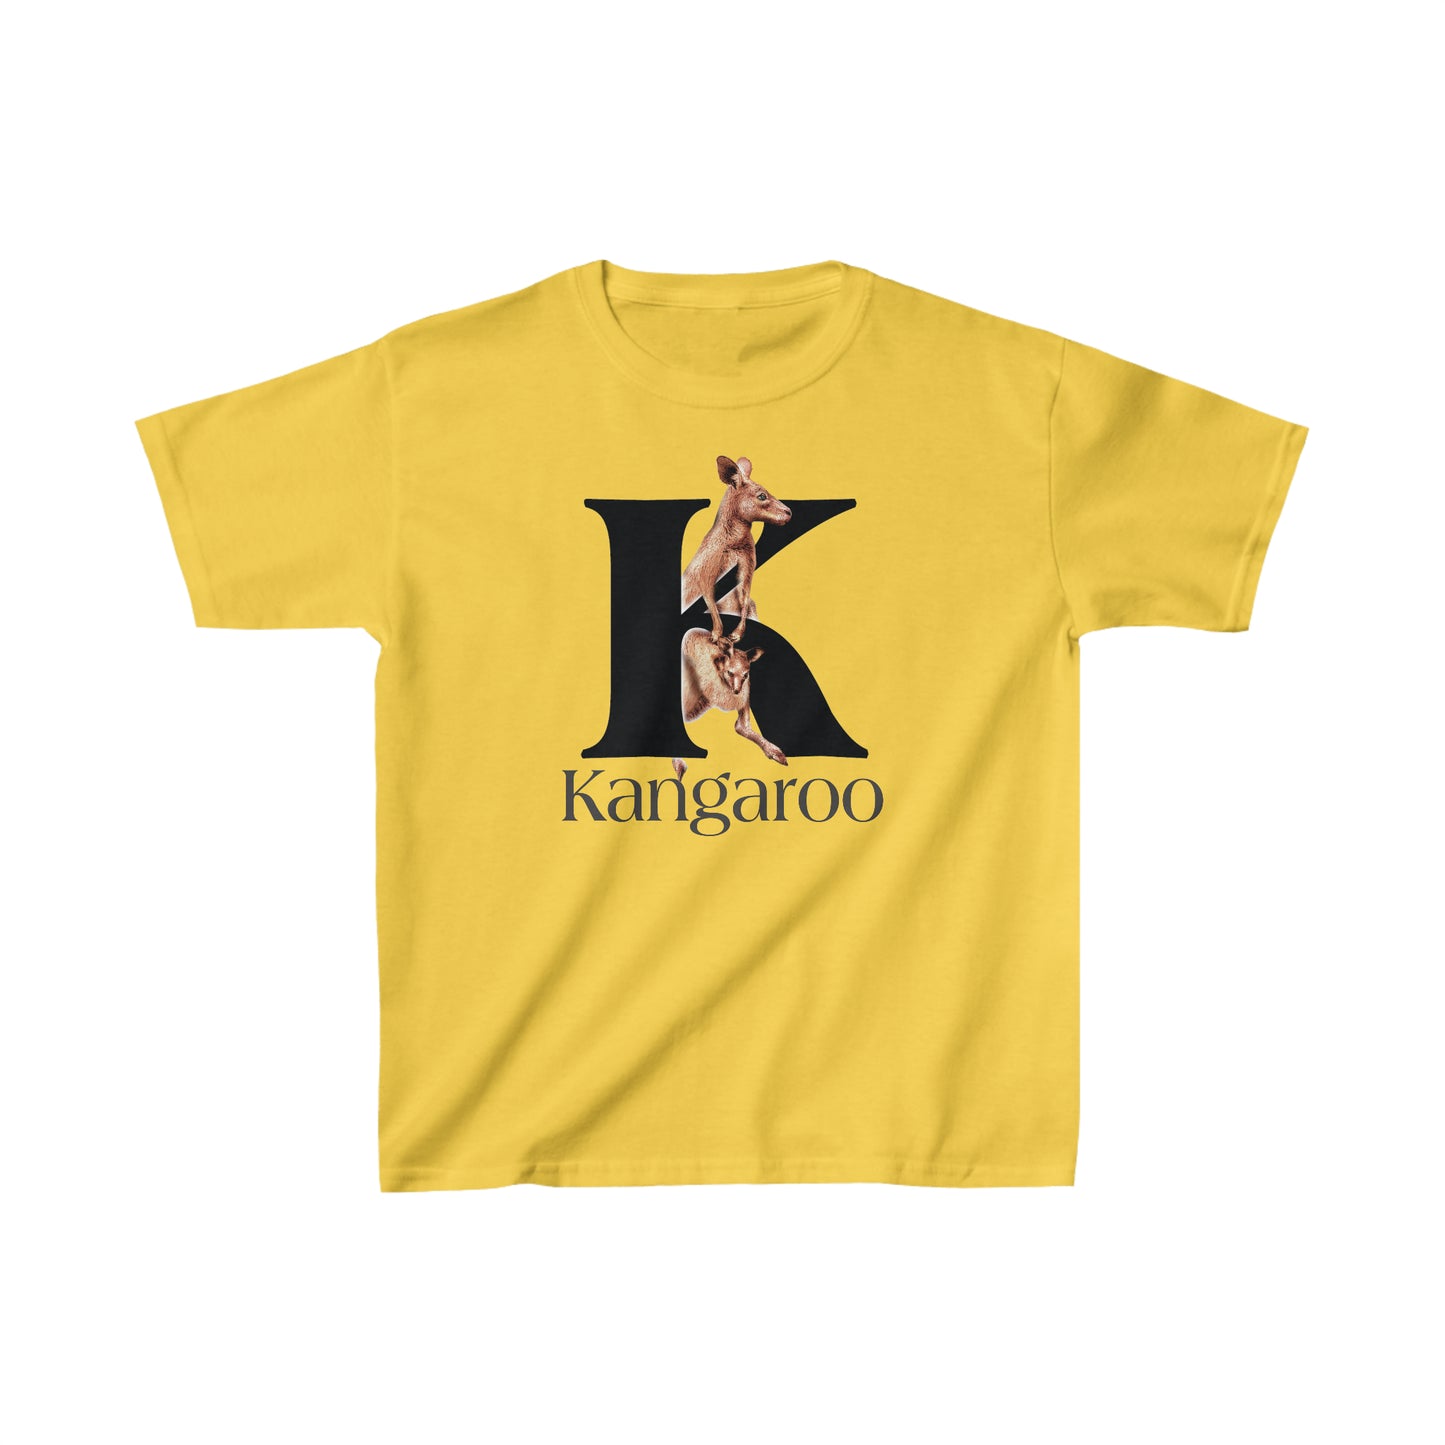 K is for Kangaroo, Kangaroo Mom and Joey shirt, Illustrated Drawing T-Shirt, animal t-shirt, animal alphabet T, animal letters Tee